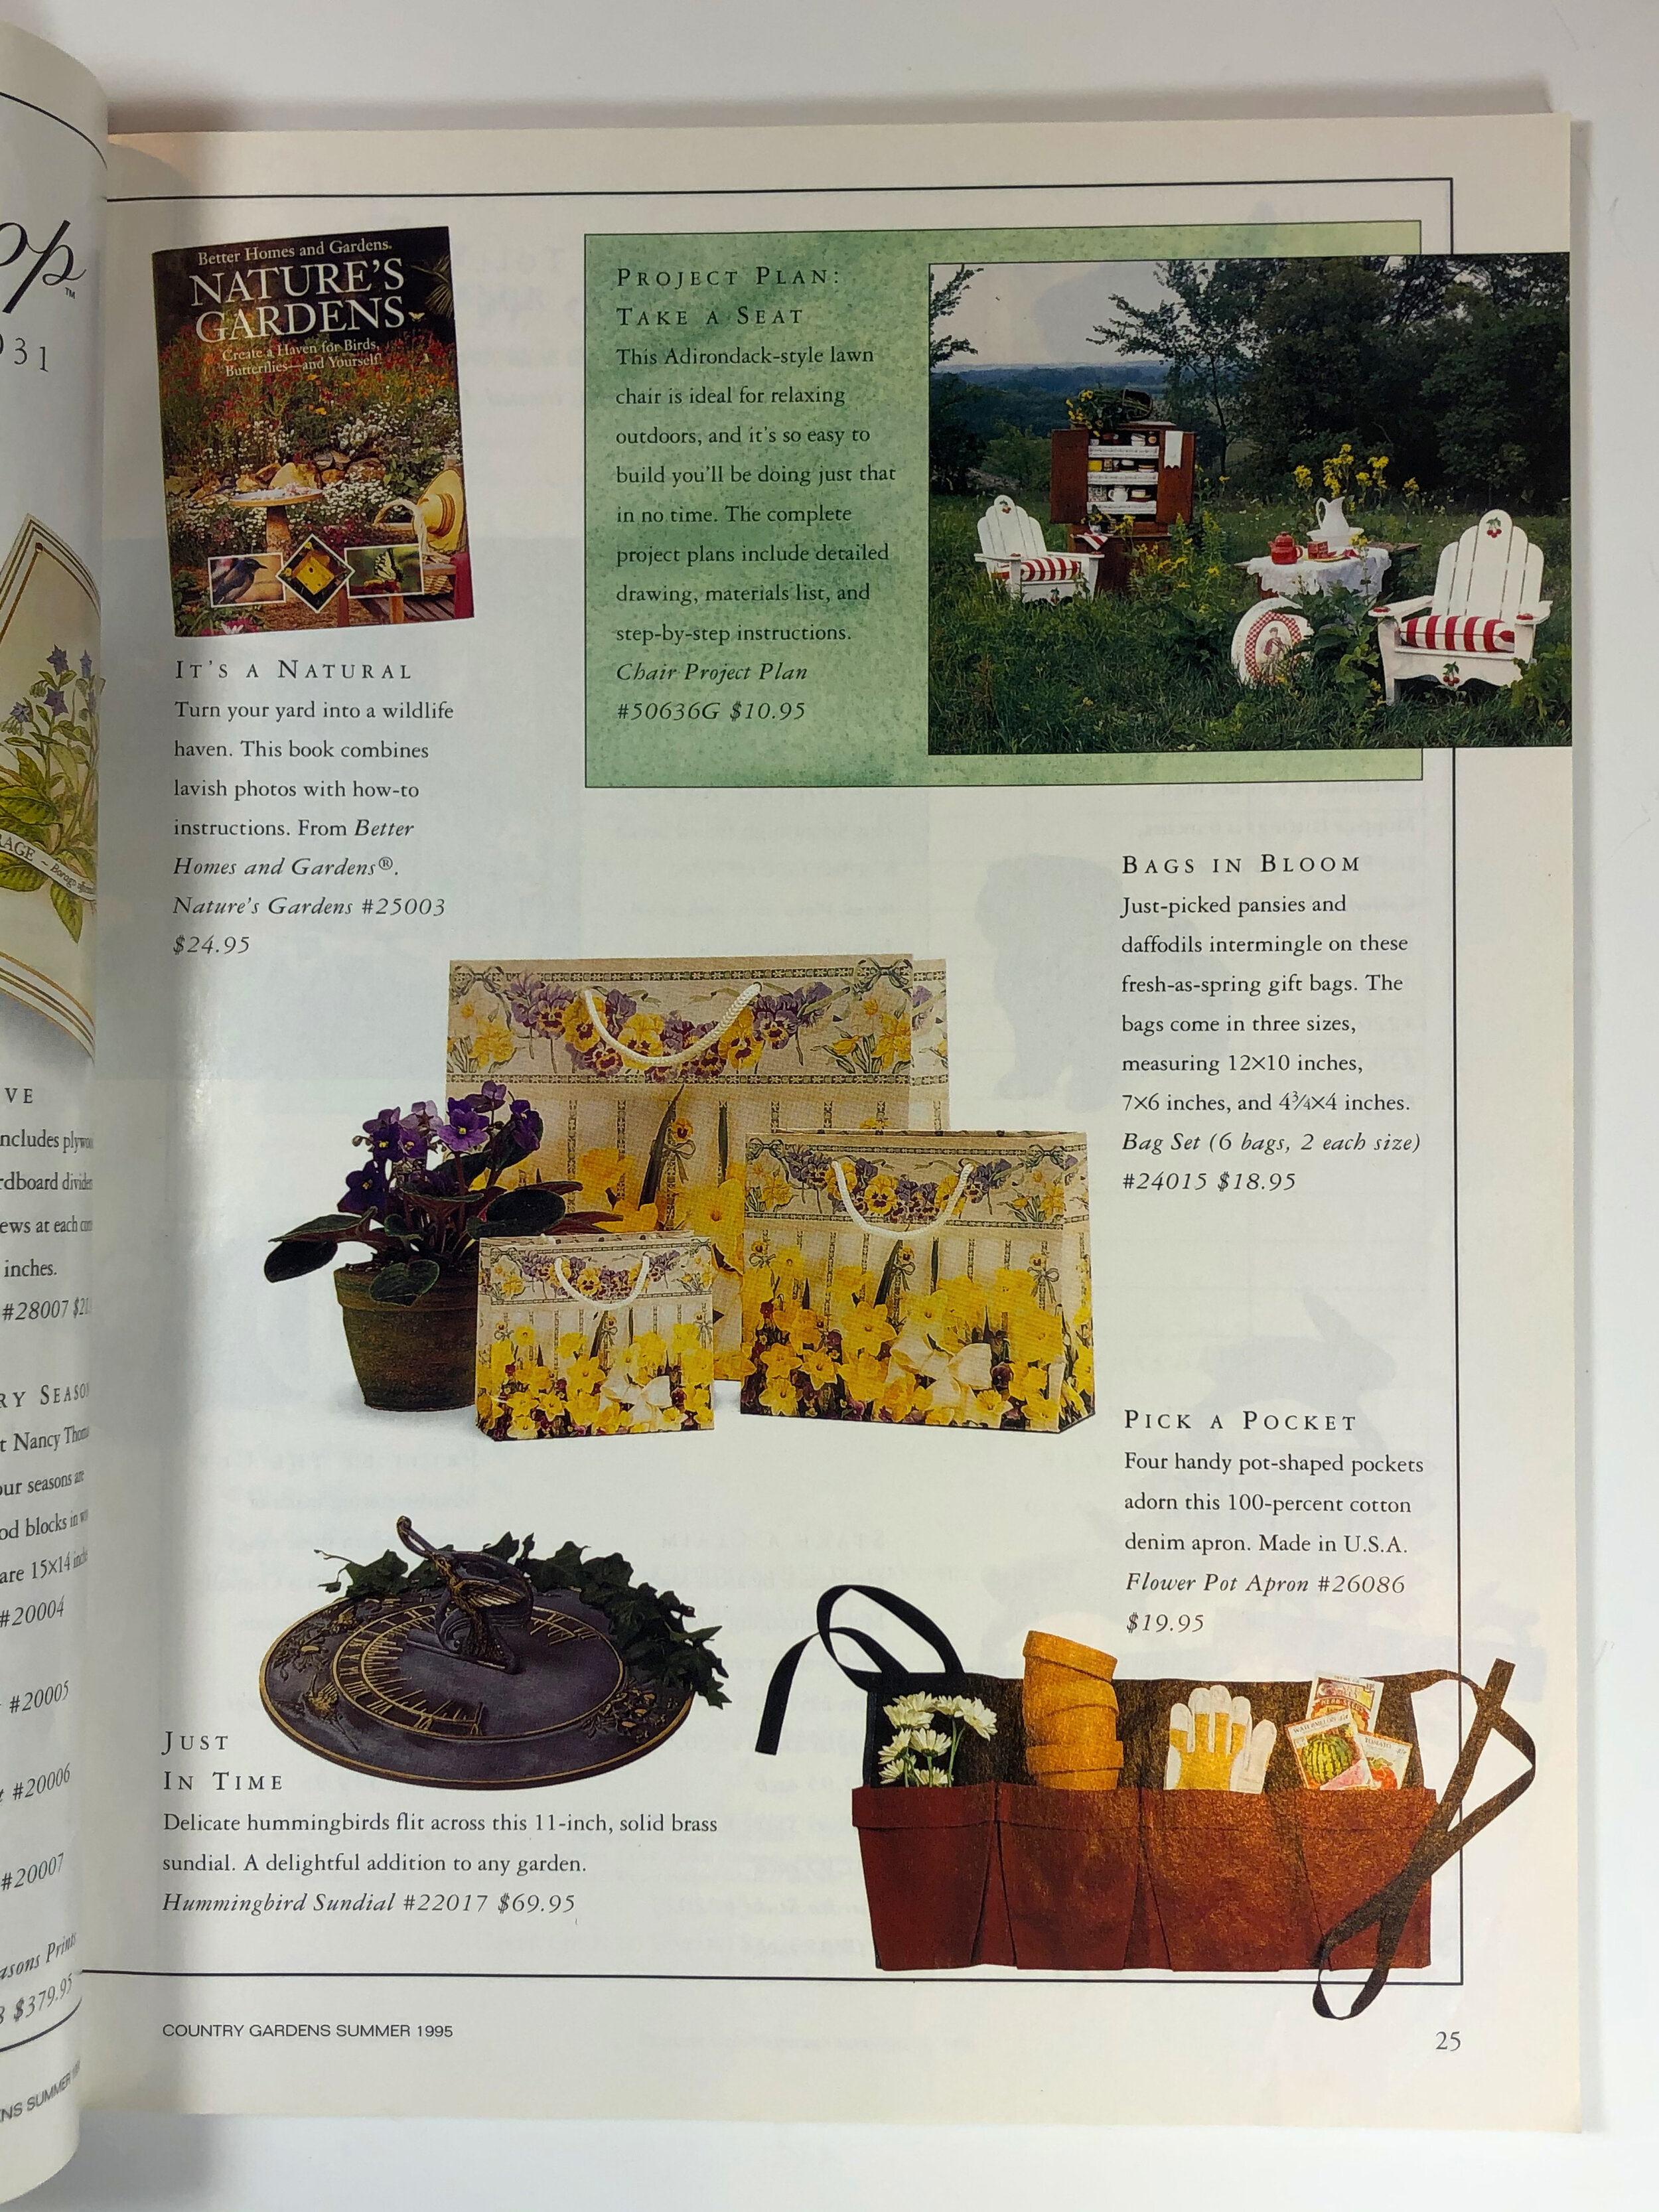 Waist Flower Pot Apron in Country Garden Magazine.jpg